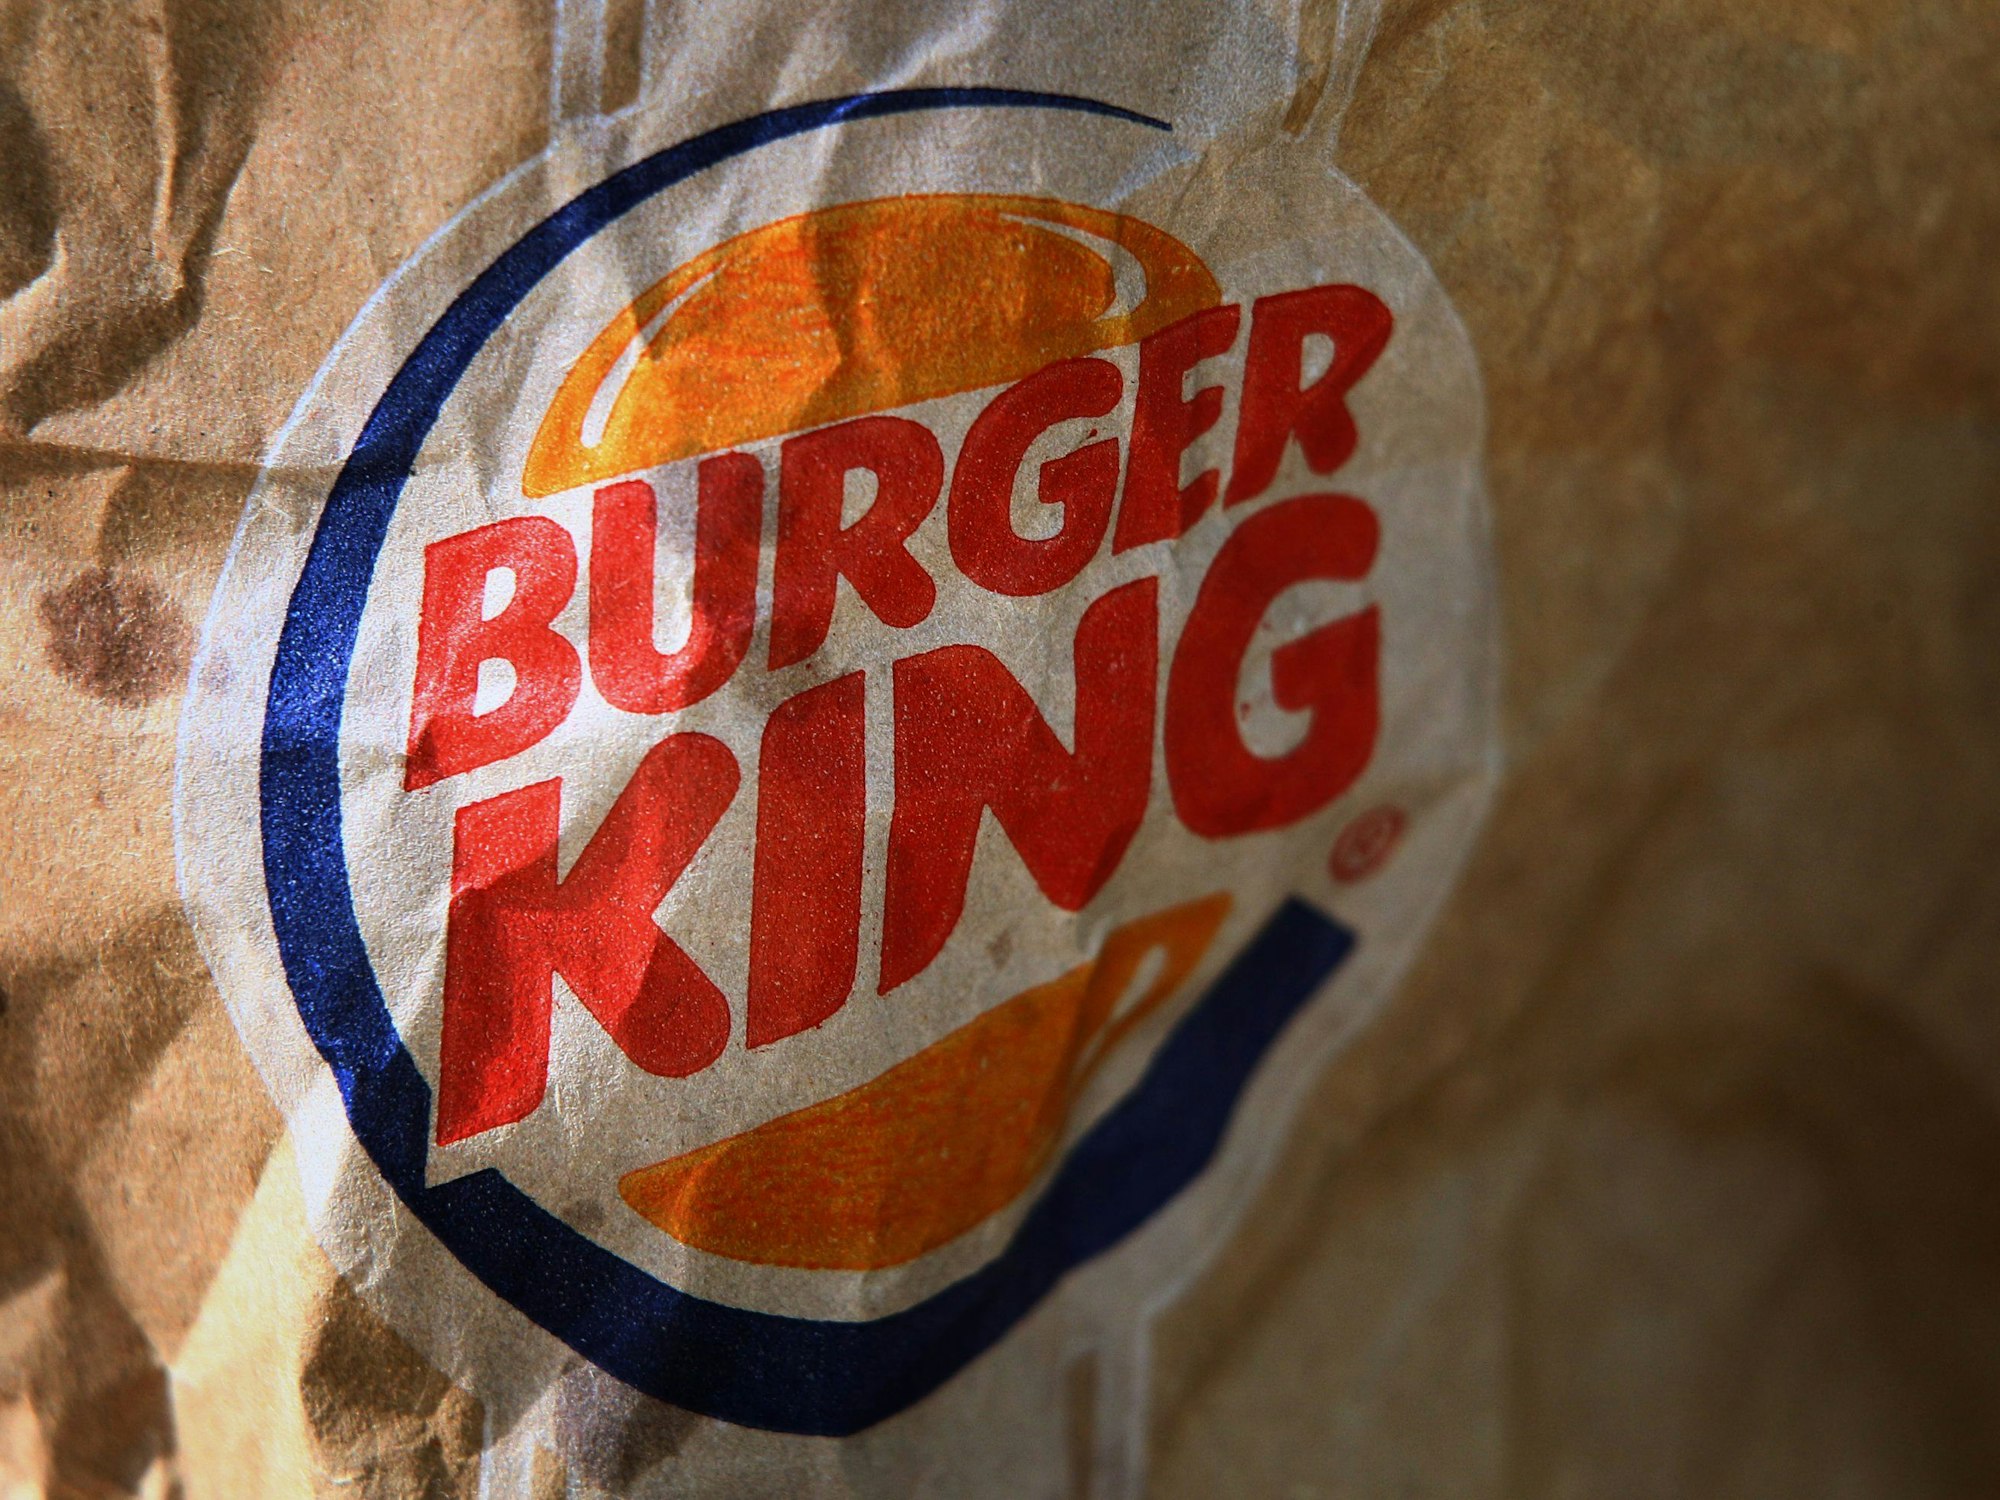 Das Logo der Fastfoodkette Burger King auf einer zerknitterten Tüte.